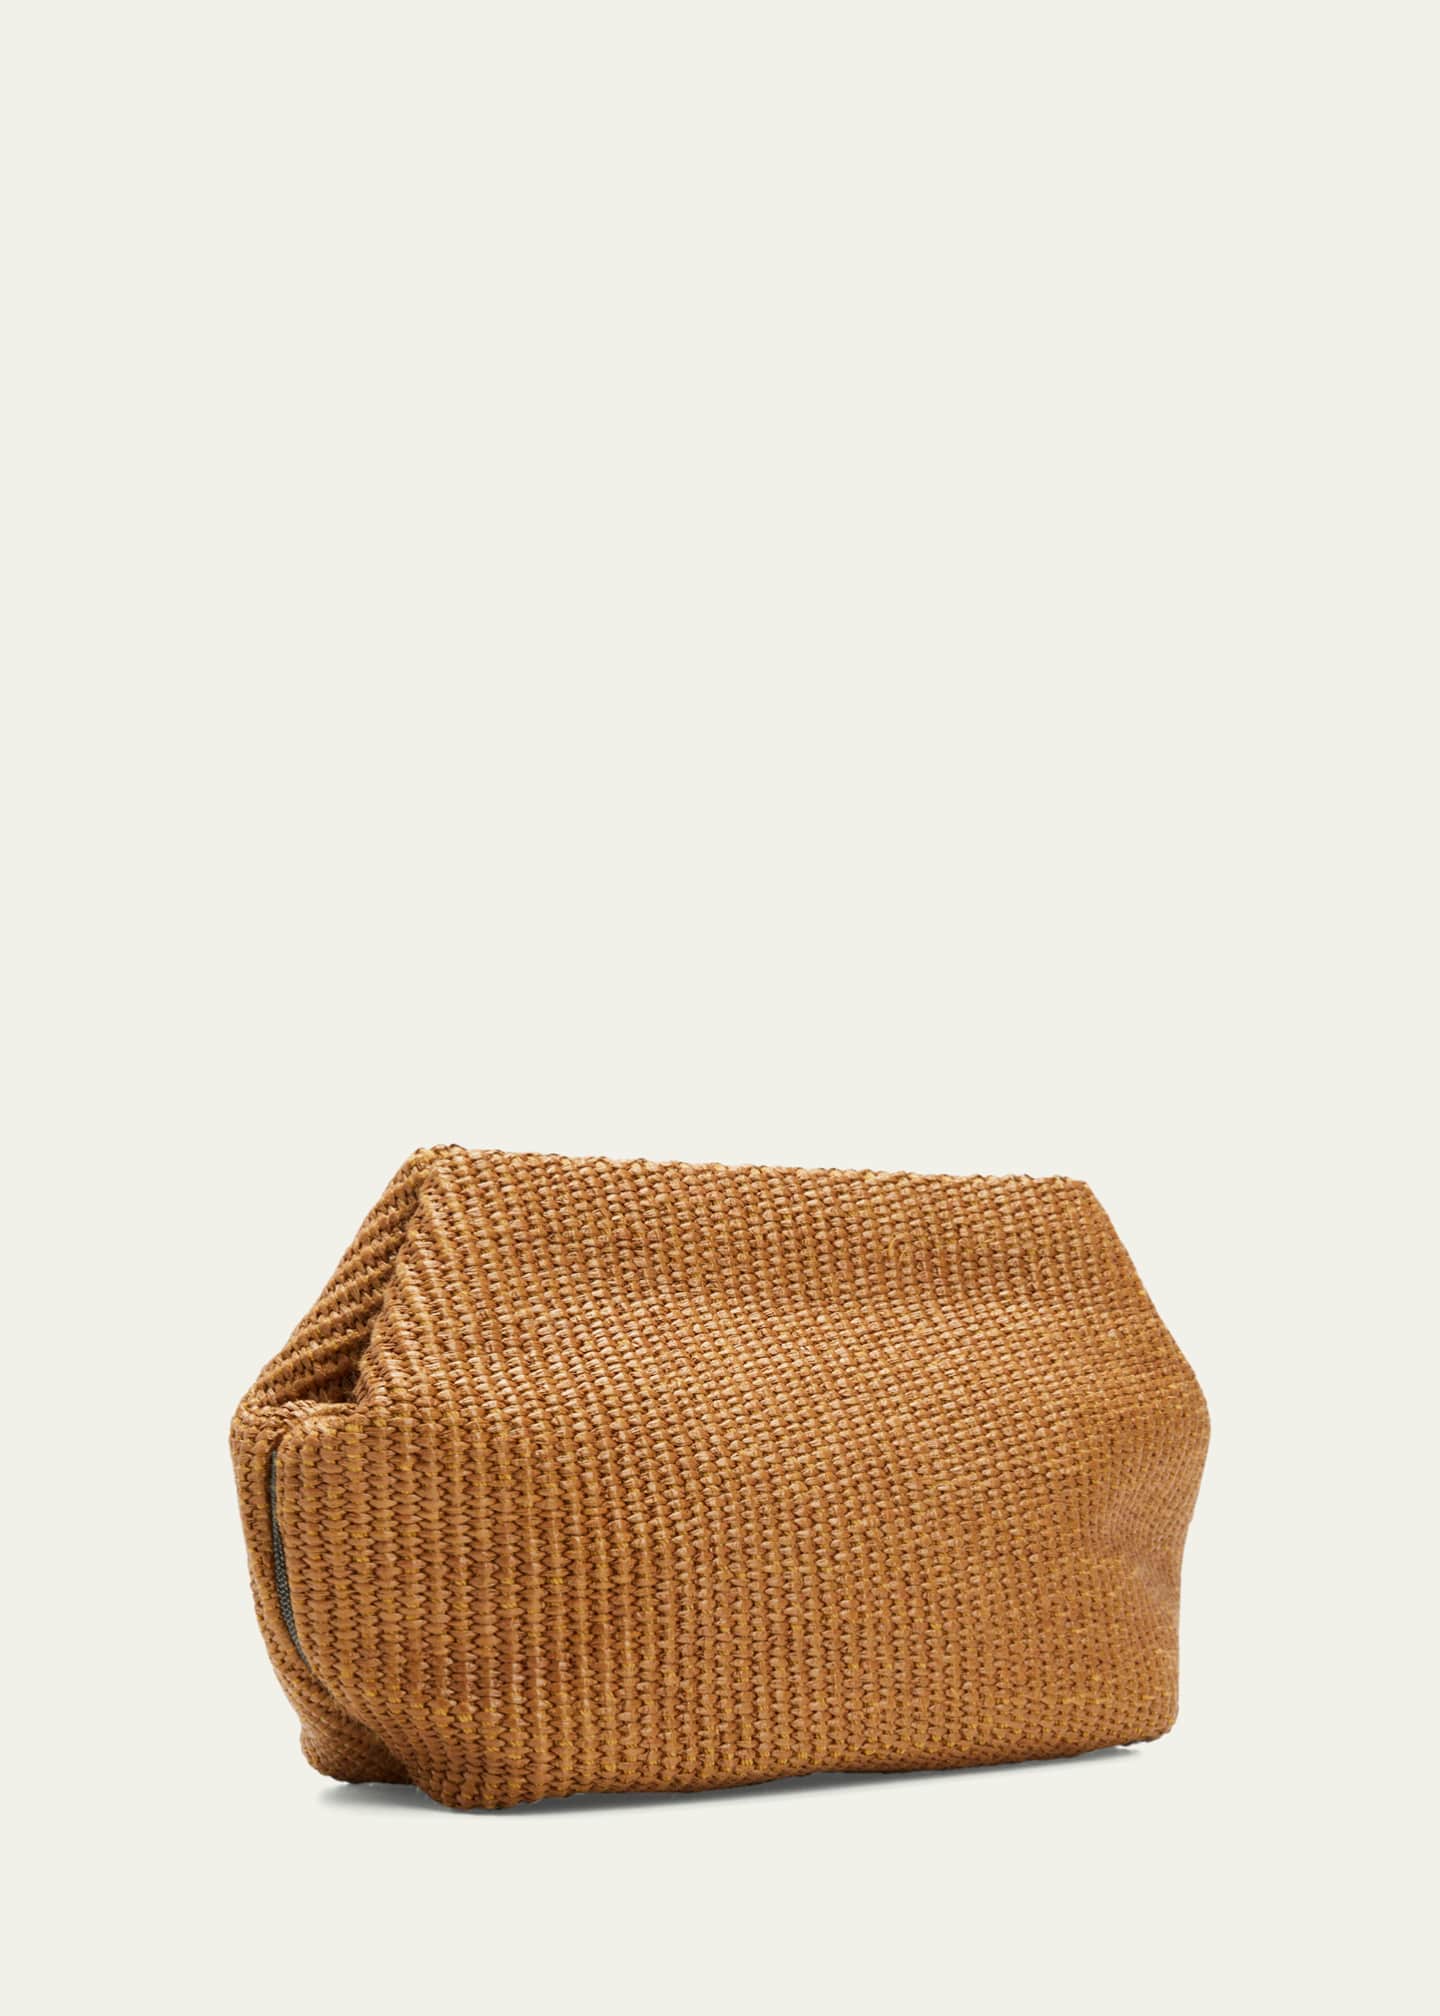 Braided raffia clutch bag